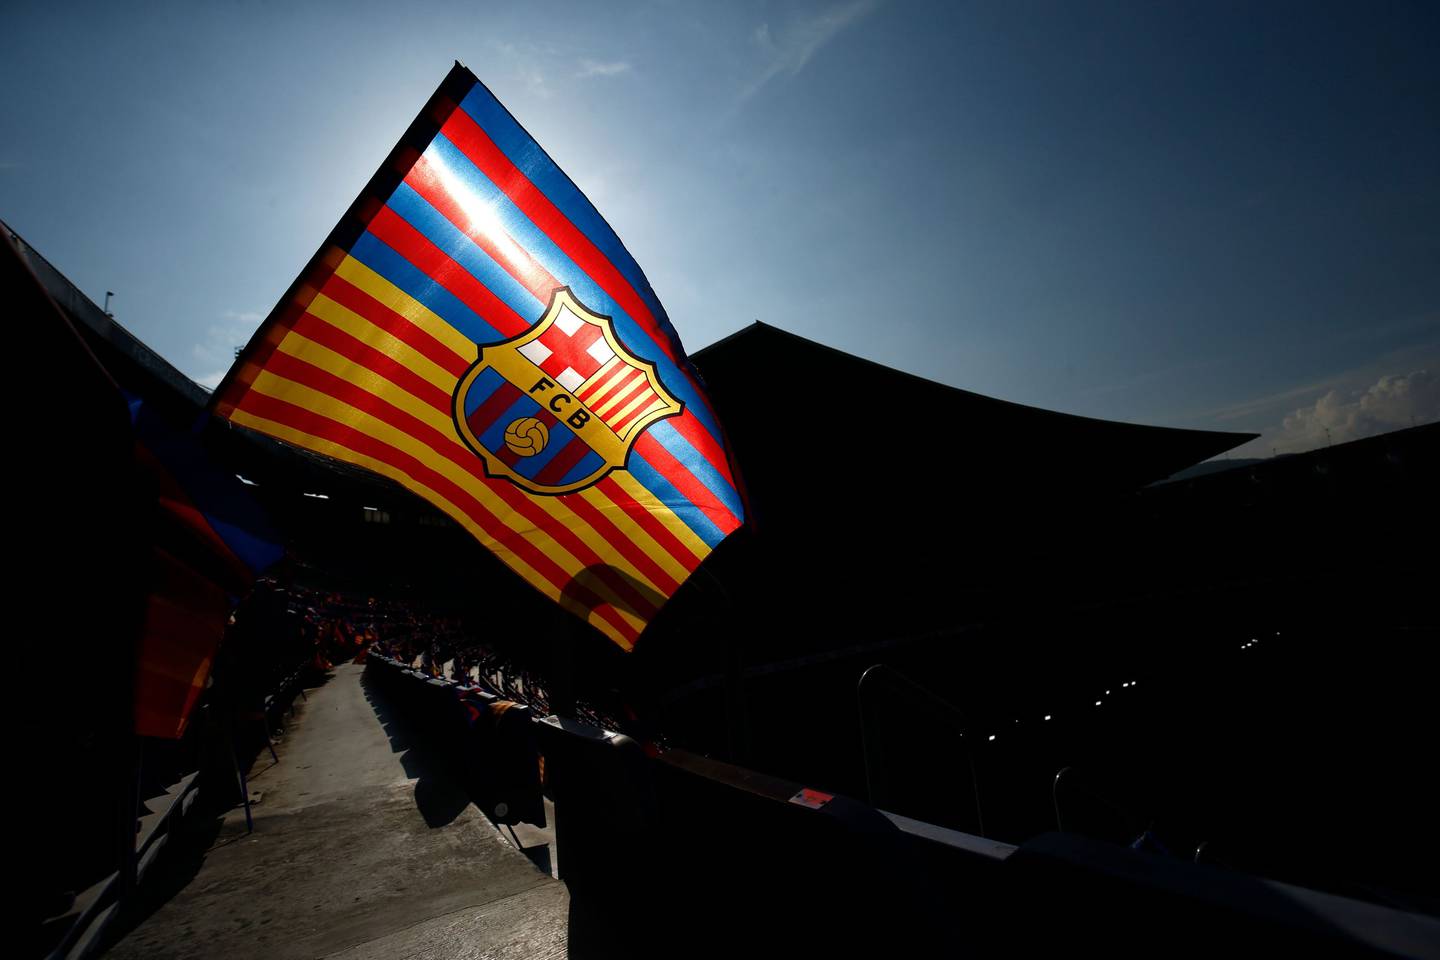 A Barcelona FC flag.